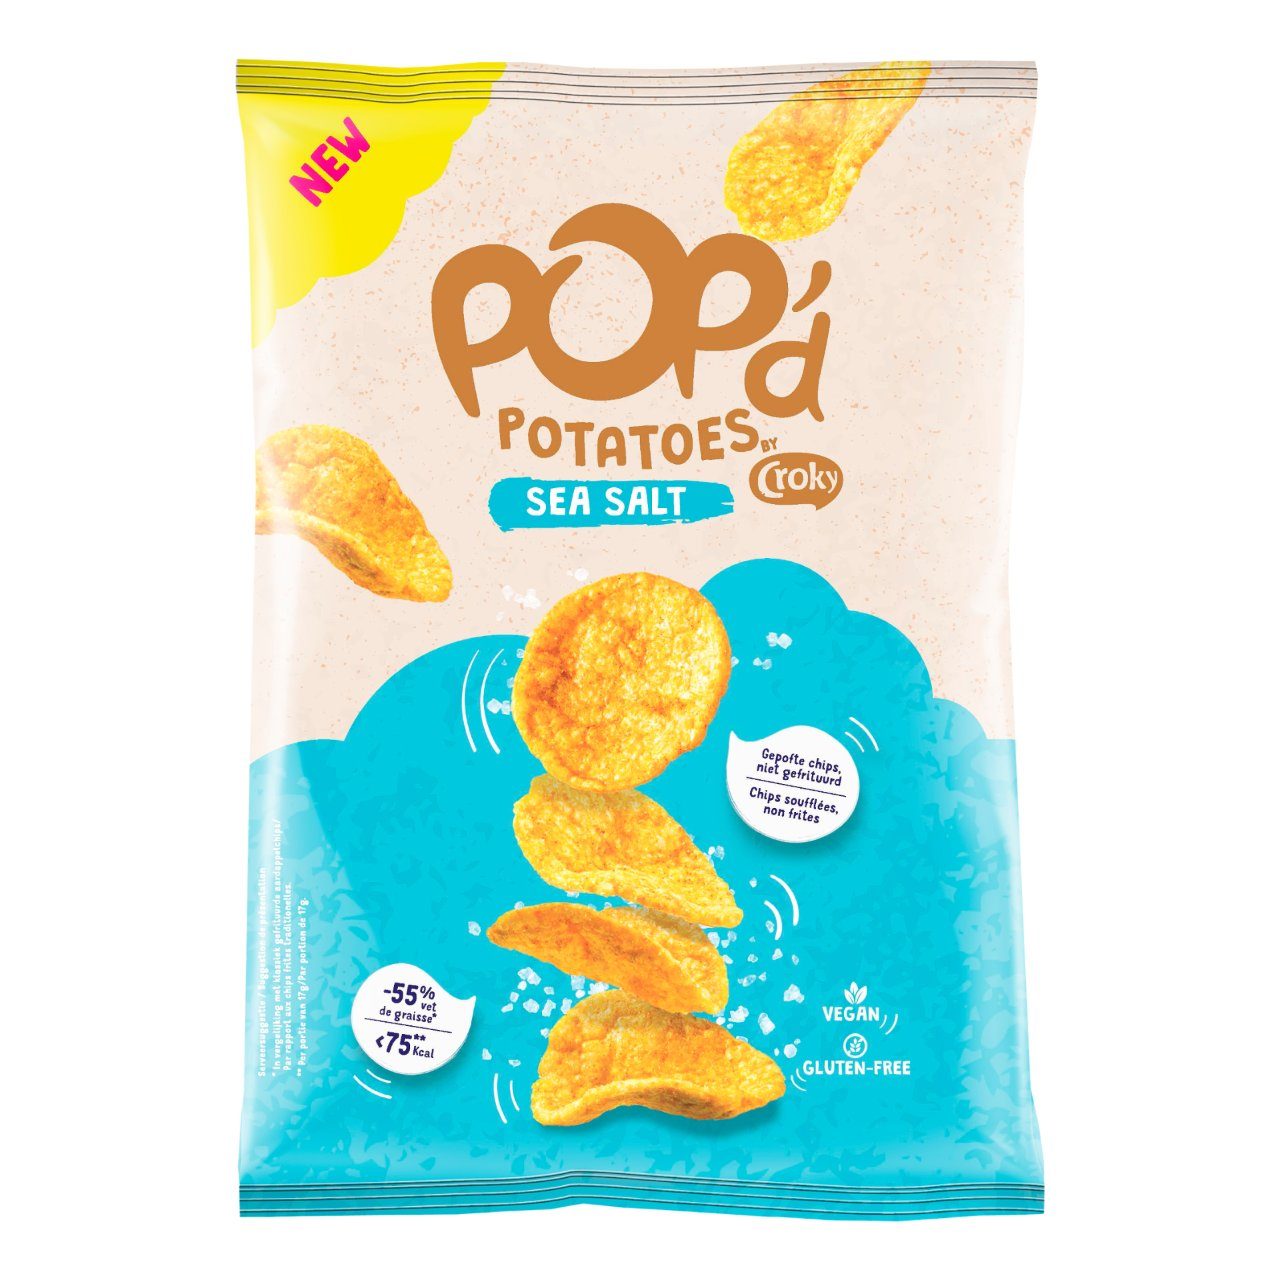 Pop'd Sea salt chips